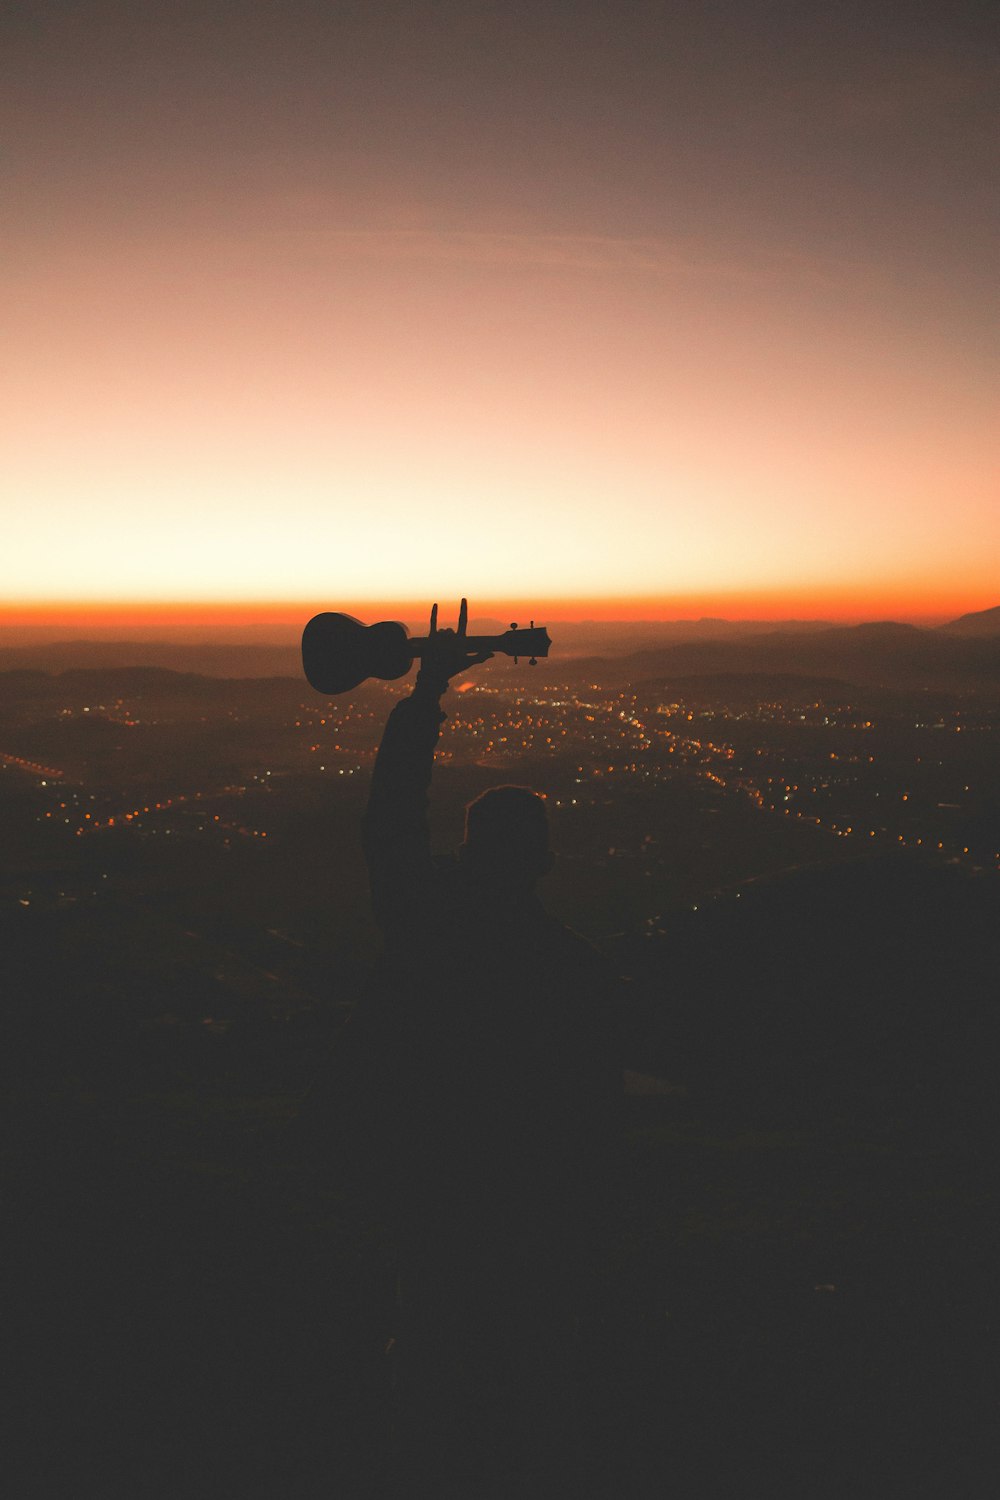 photographie de silhouette d’une personne tenant une guitare